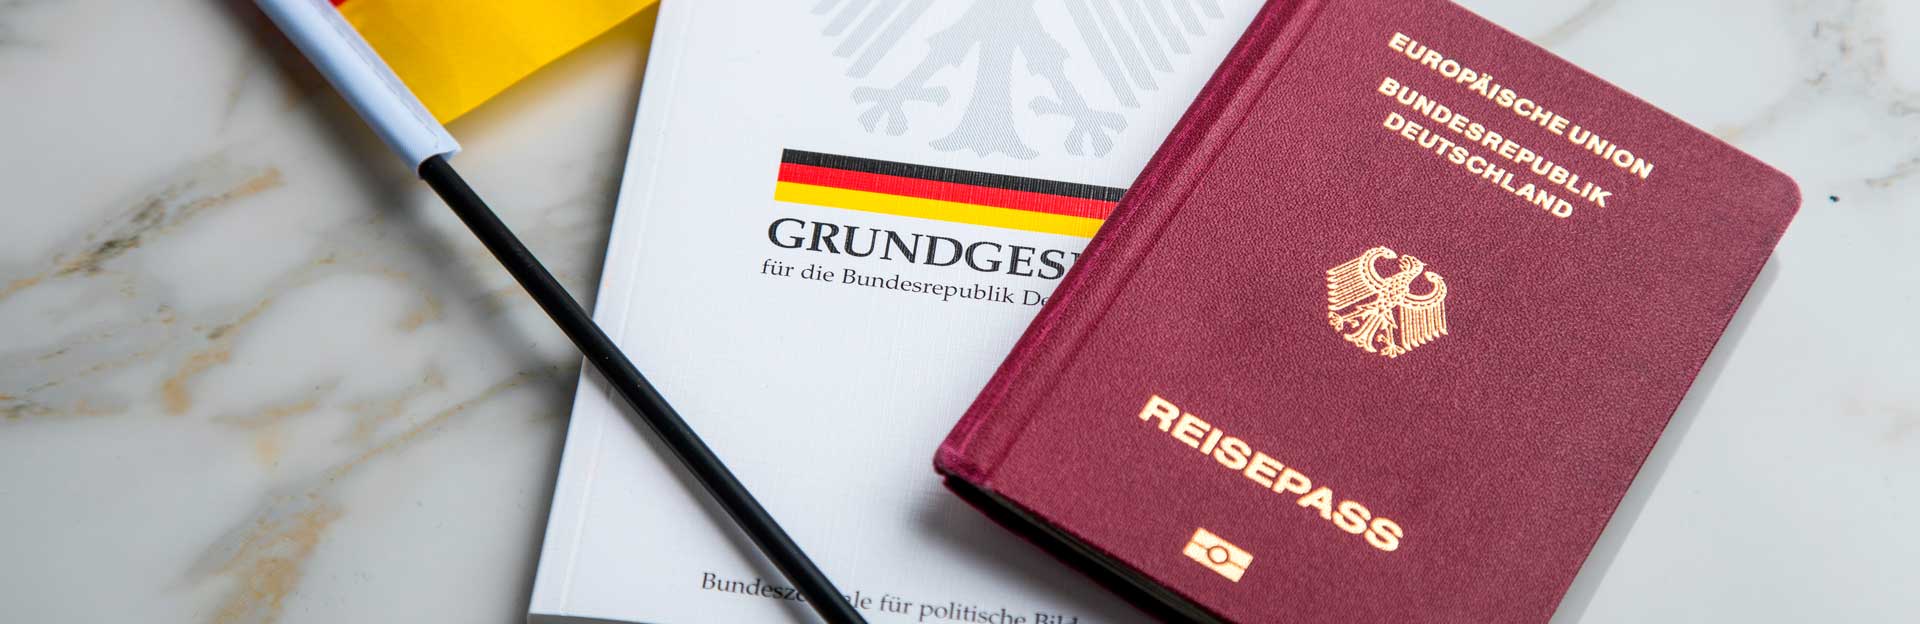 Российское гражданство в германии. Гражданство ФРГ. Двойное гражданство в Германии.